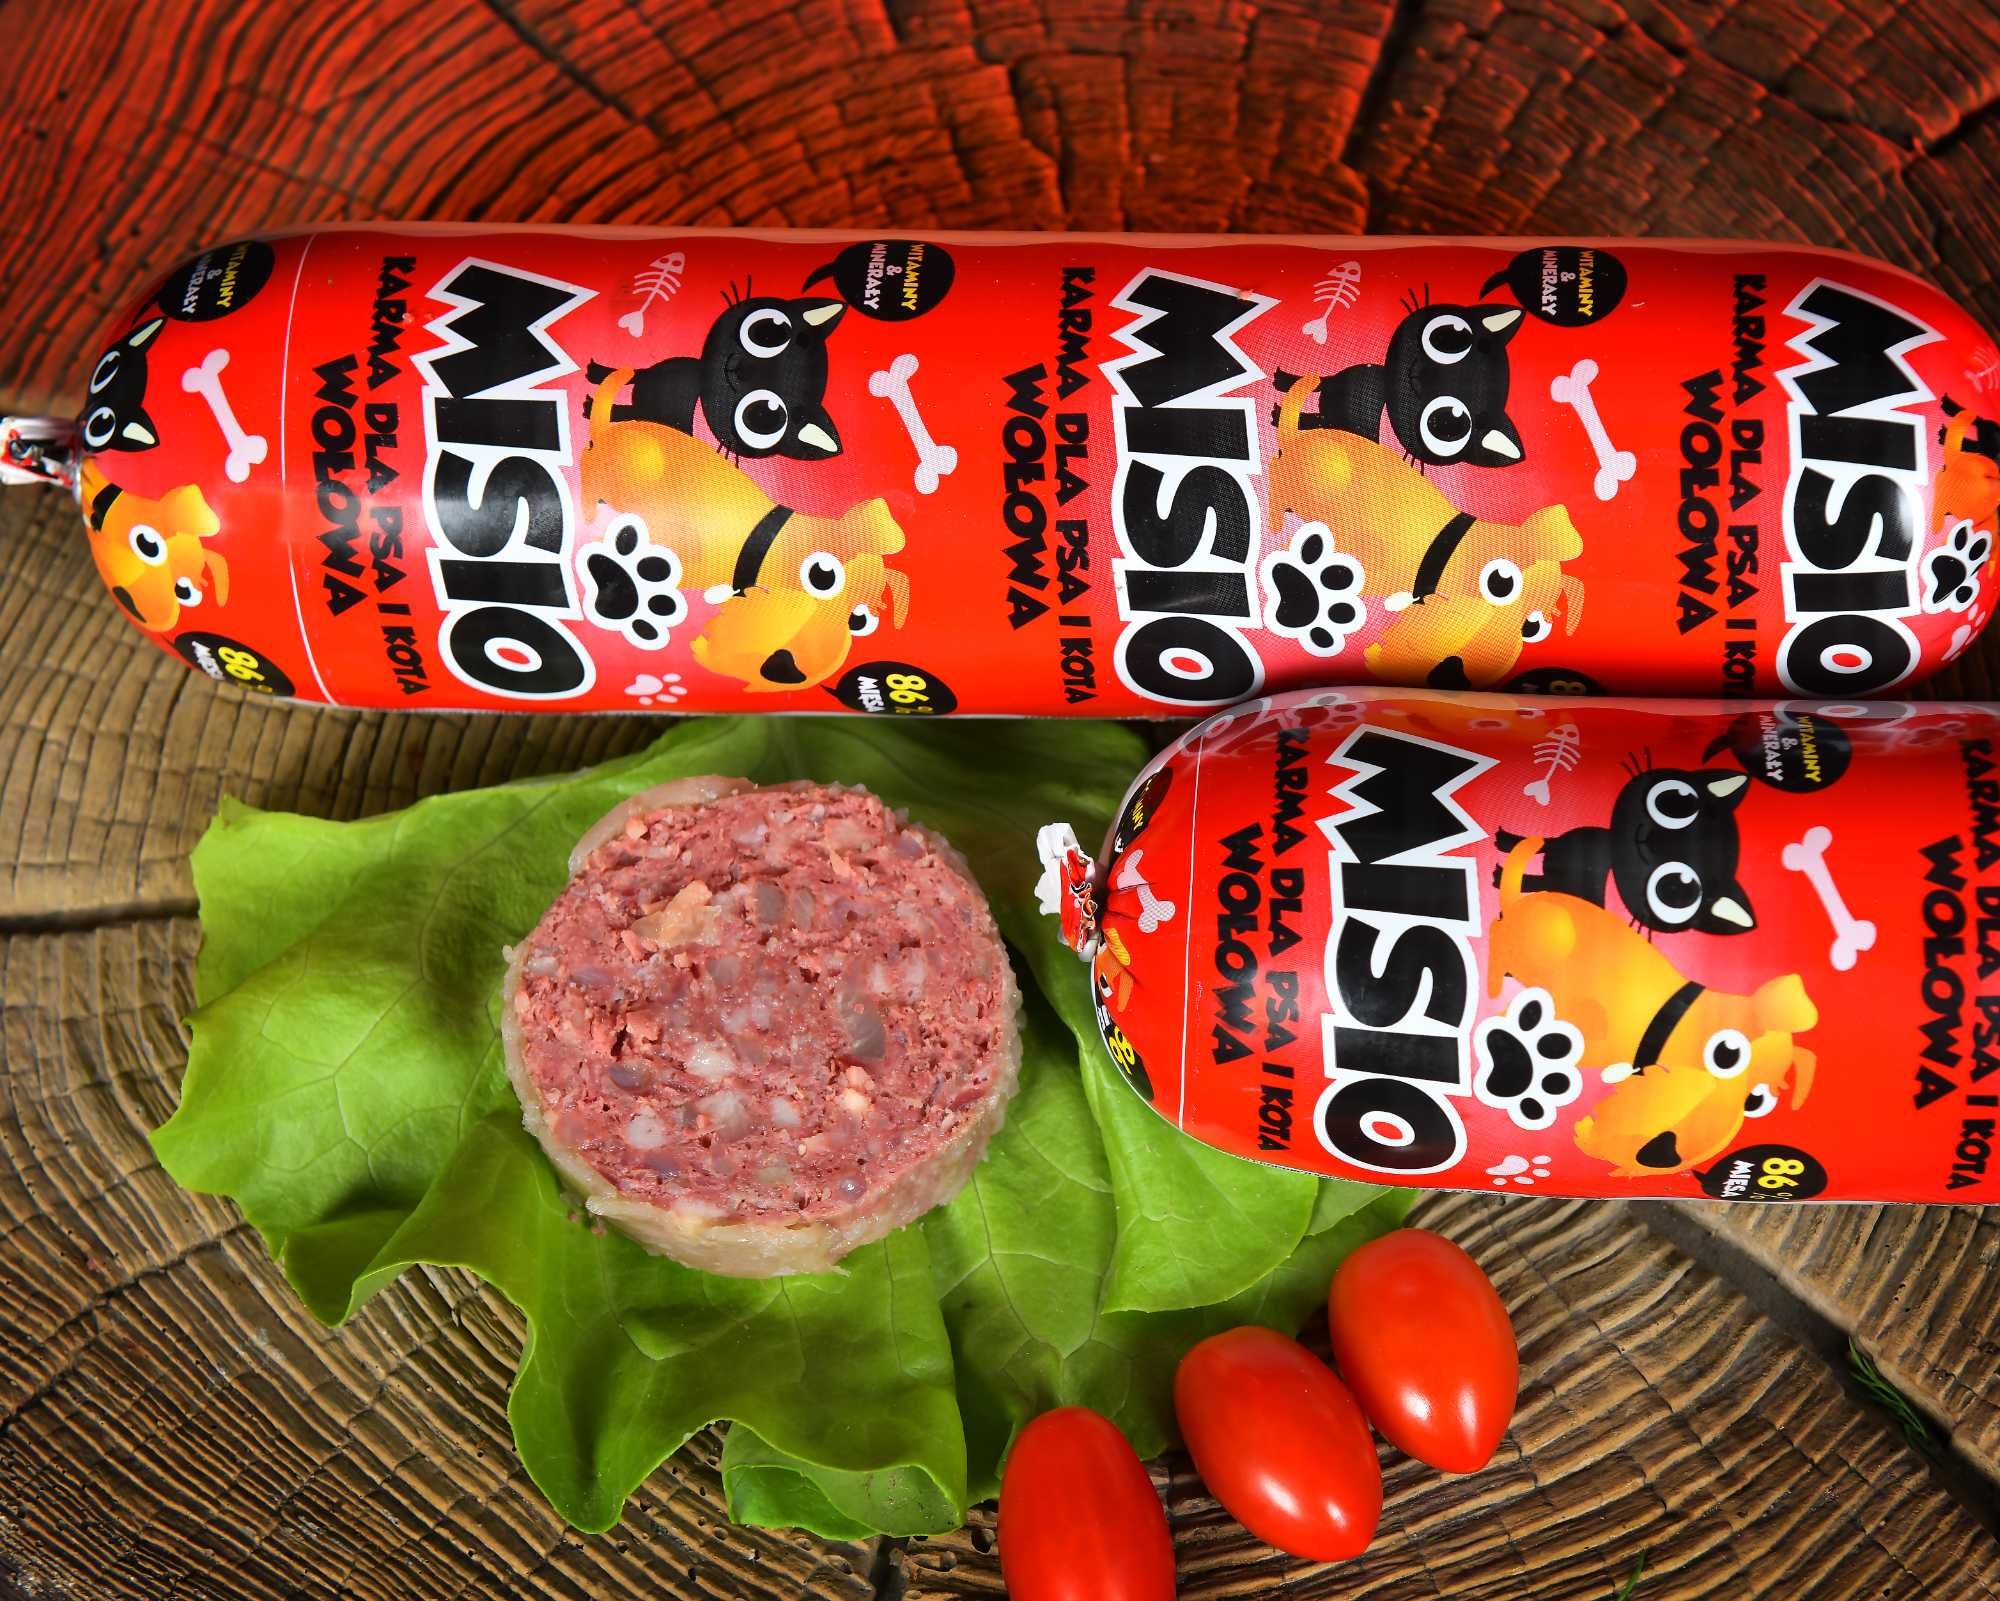 Wysyłka gratis!!! 29kg Karma dla psa Misio 83% mięsa mix smaków 29szt.